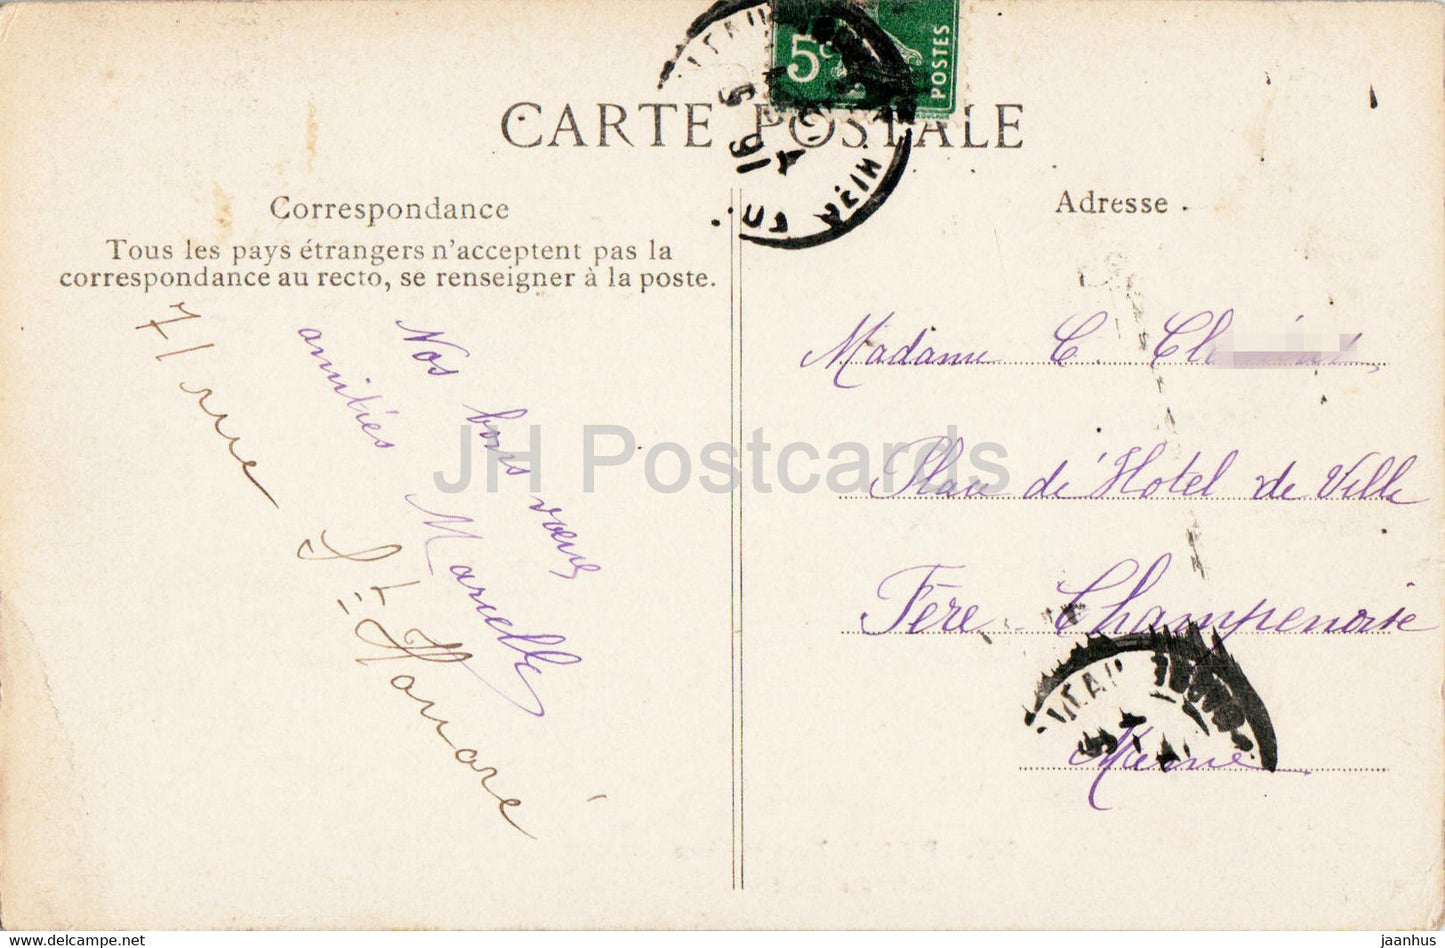 Palais de Fontainebleau - Salle des Gardes - 561 - old postcard - France - used